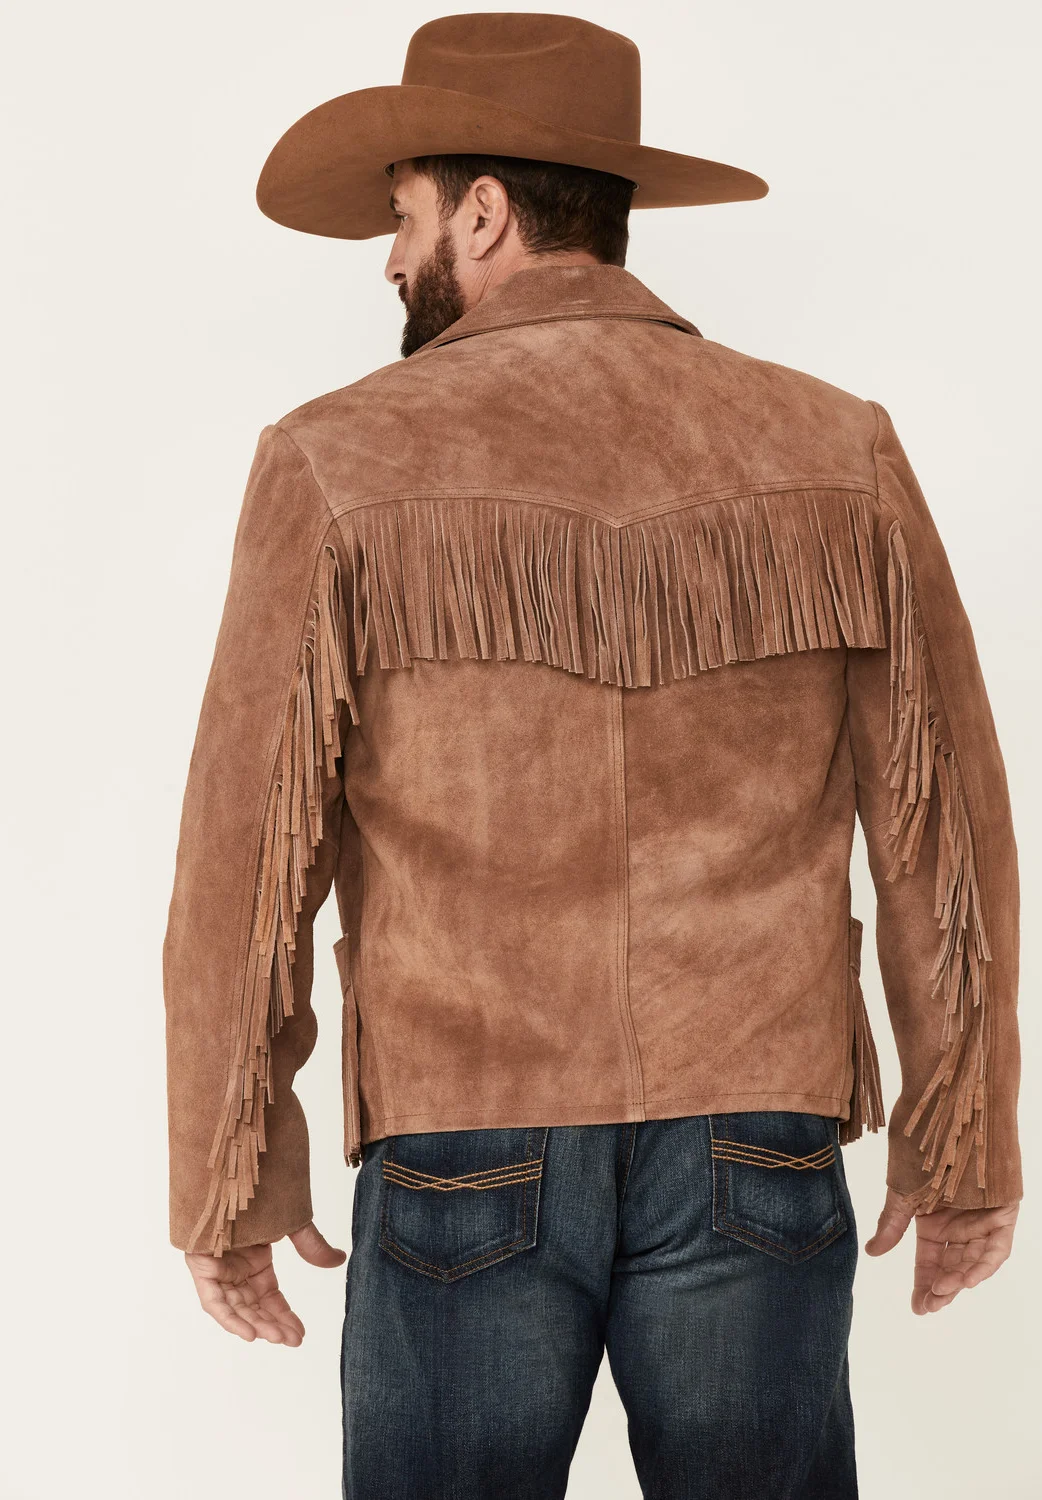 The Giant Fringe Suede Leather Jacket